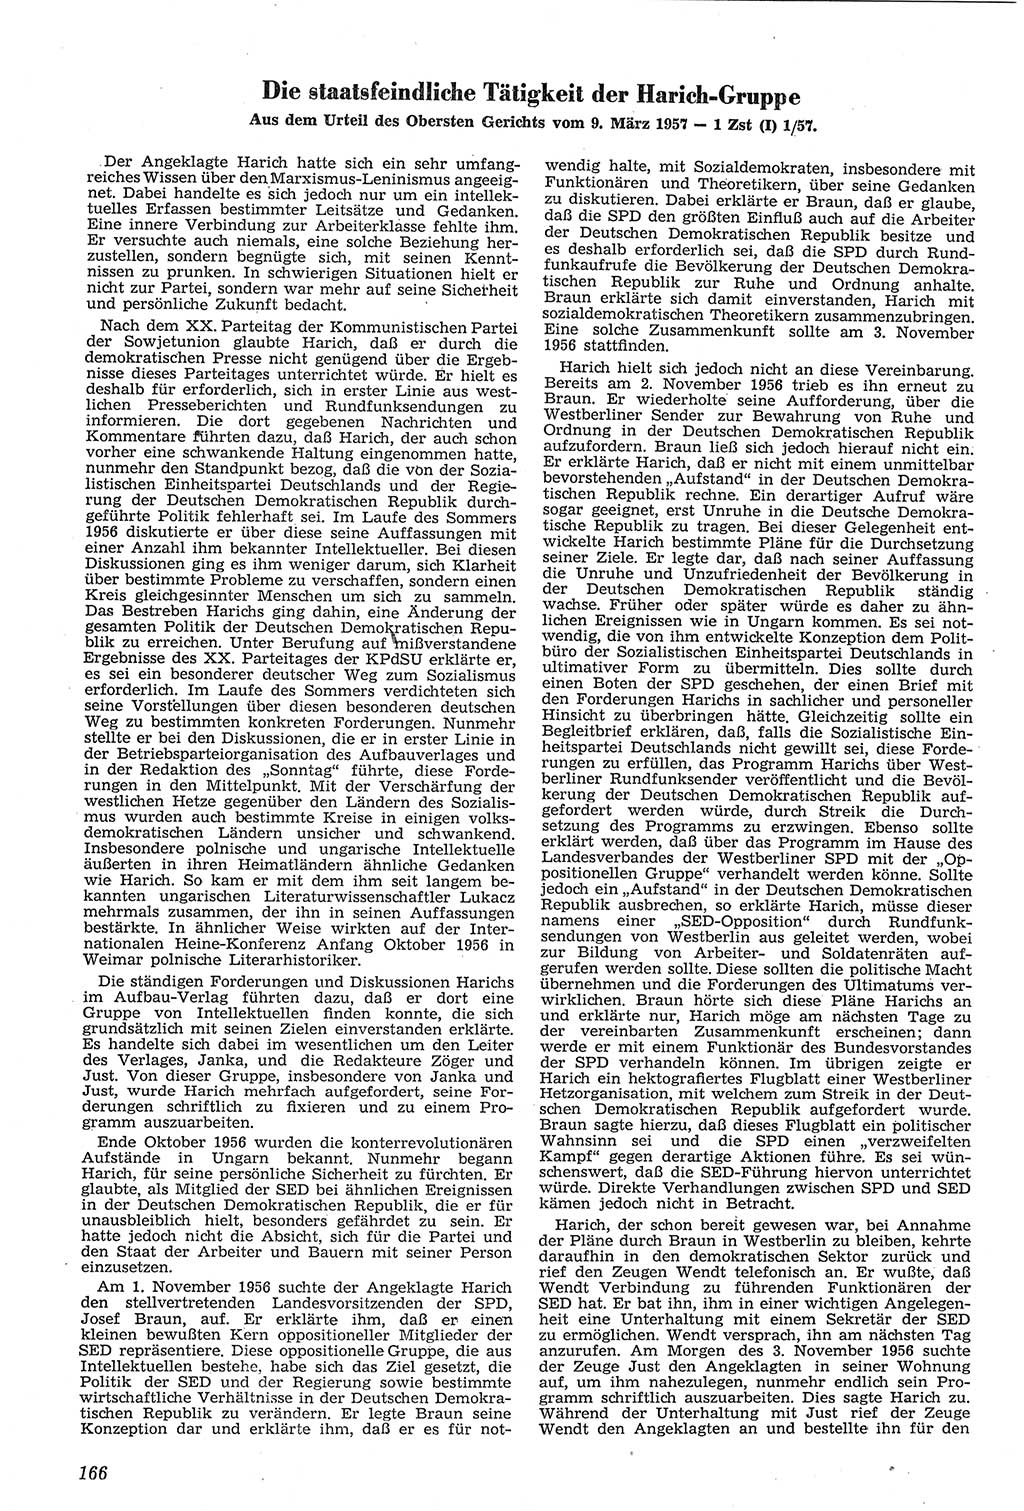 Neue Justiz (NJ), Zeitschrift für Recht und Rechtswissenschaft [Deutsche Demokratische Republik (DDR)], 11. Jahrgang 1957, Seite 166 (NJ DDR 1957, S. 166)